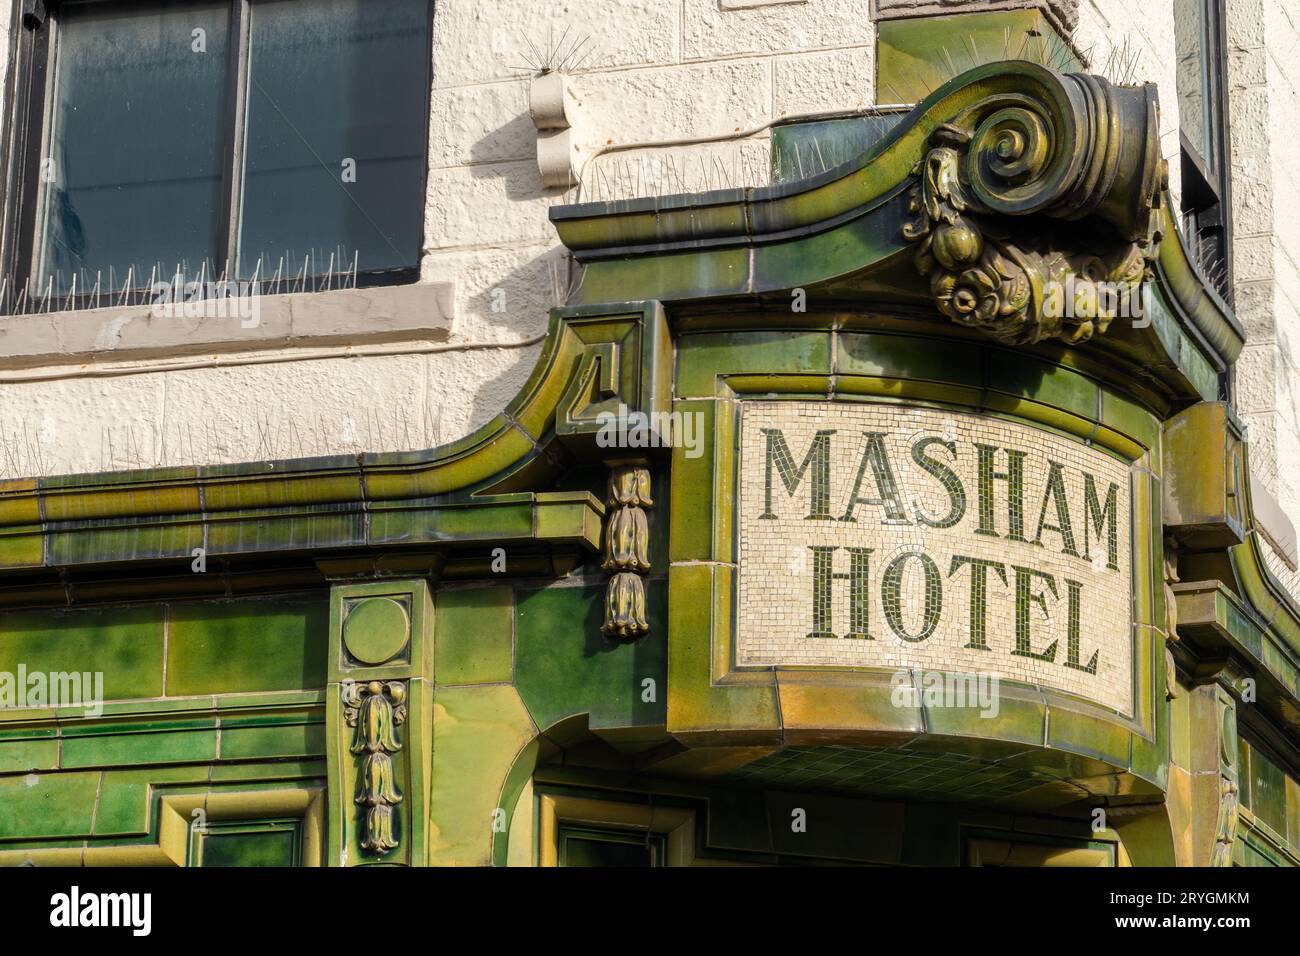 Das traditionelle, grüne Kitching und Lee Tiled Masham Hotel, heute Navigator North Kunstorganisation im Stadtzentrum von Middlesbrough, Großbritannien Stockfoto